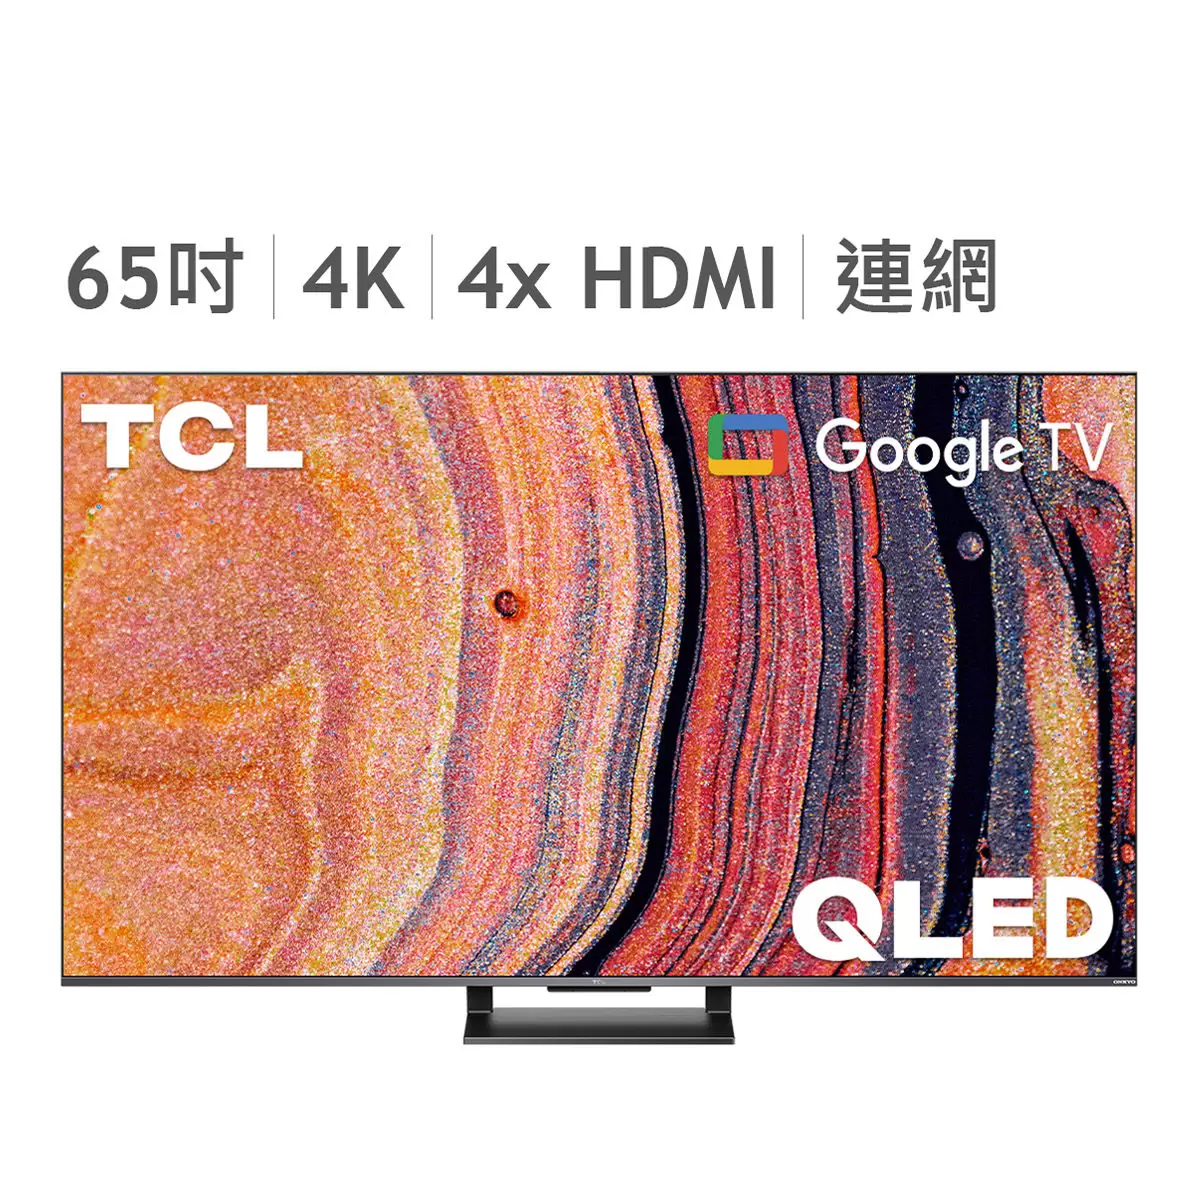 TCL 65吋 4K QLED Google TV 量子智能連網液晶顯示器不含視訊盒 65C735